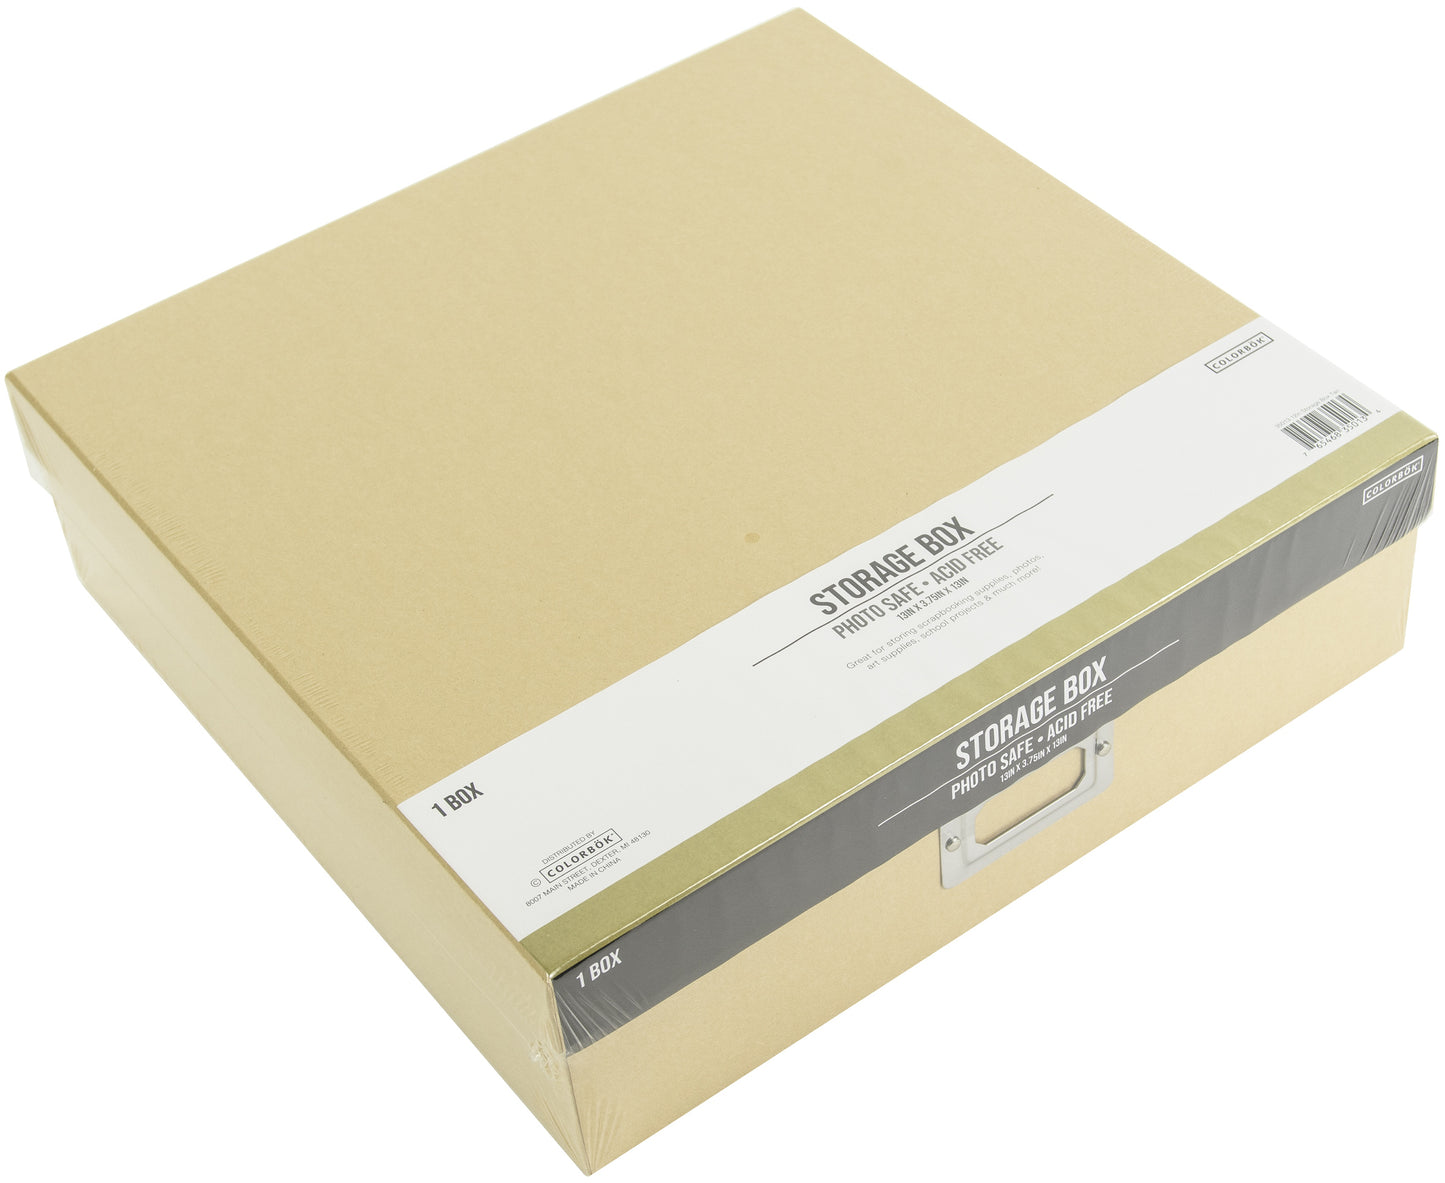 Colorbok Storage Box 12"X12"-Tan